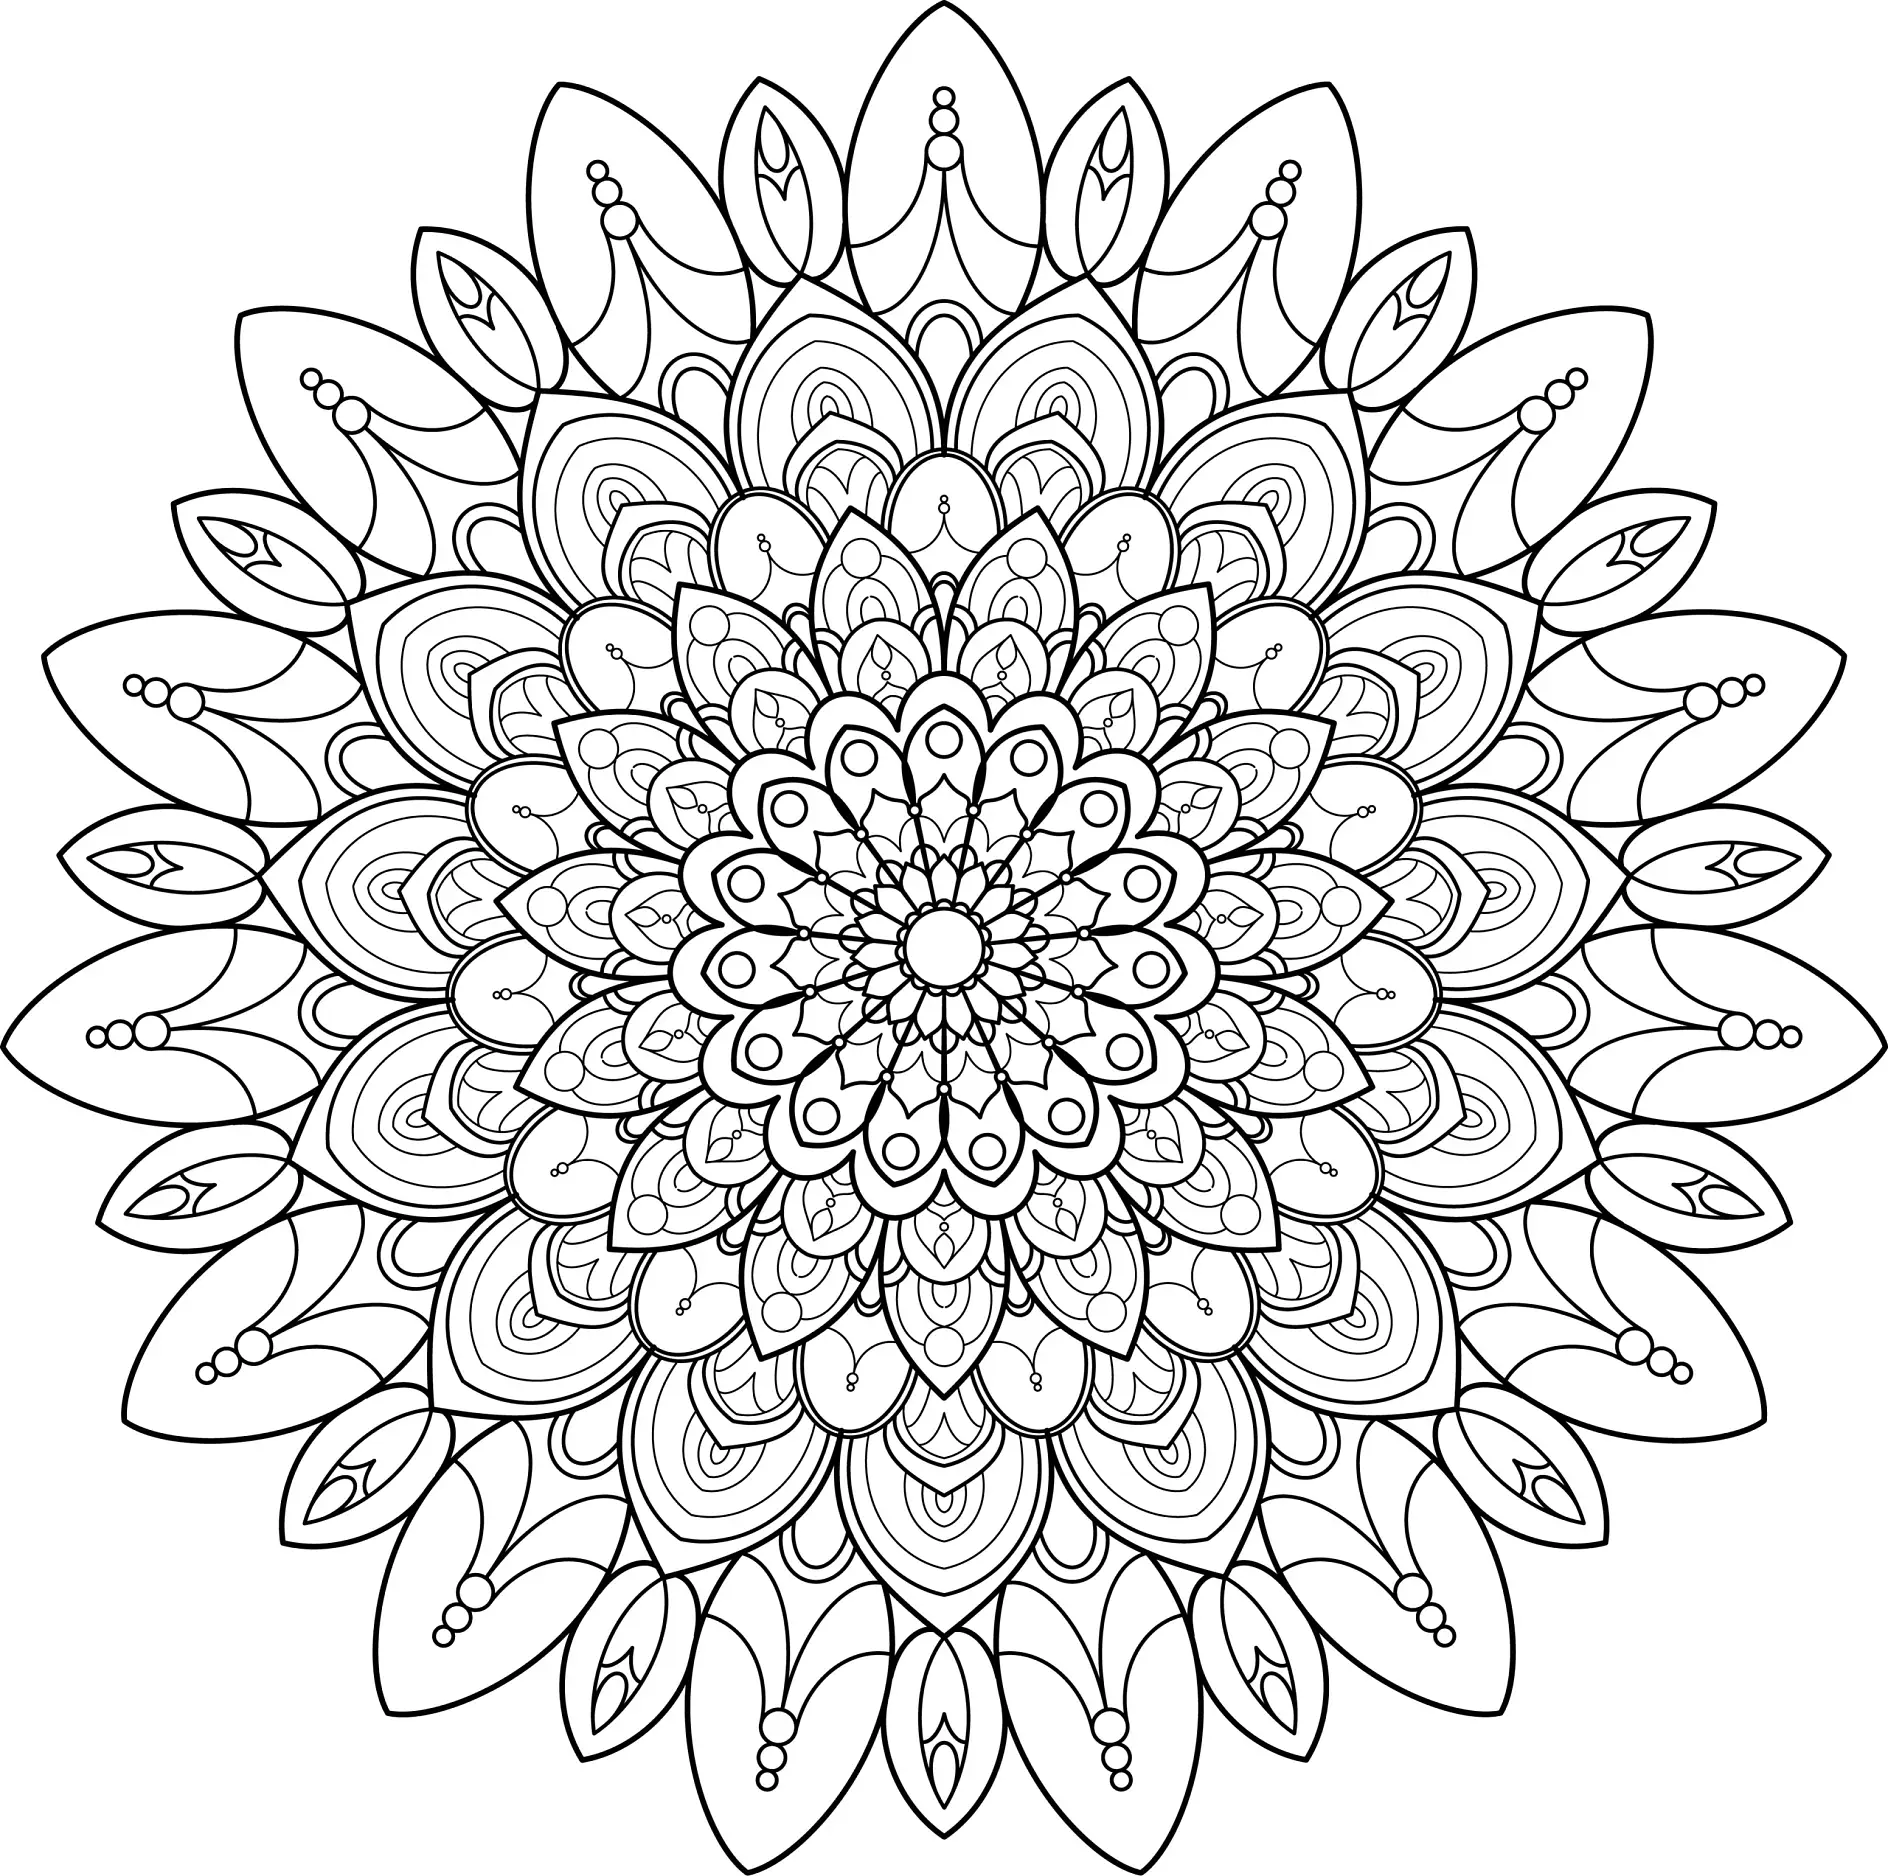 Ausmalbild Mandala mit vielen detaillierten Blättern und Mustern